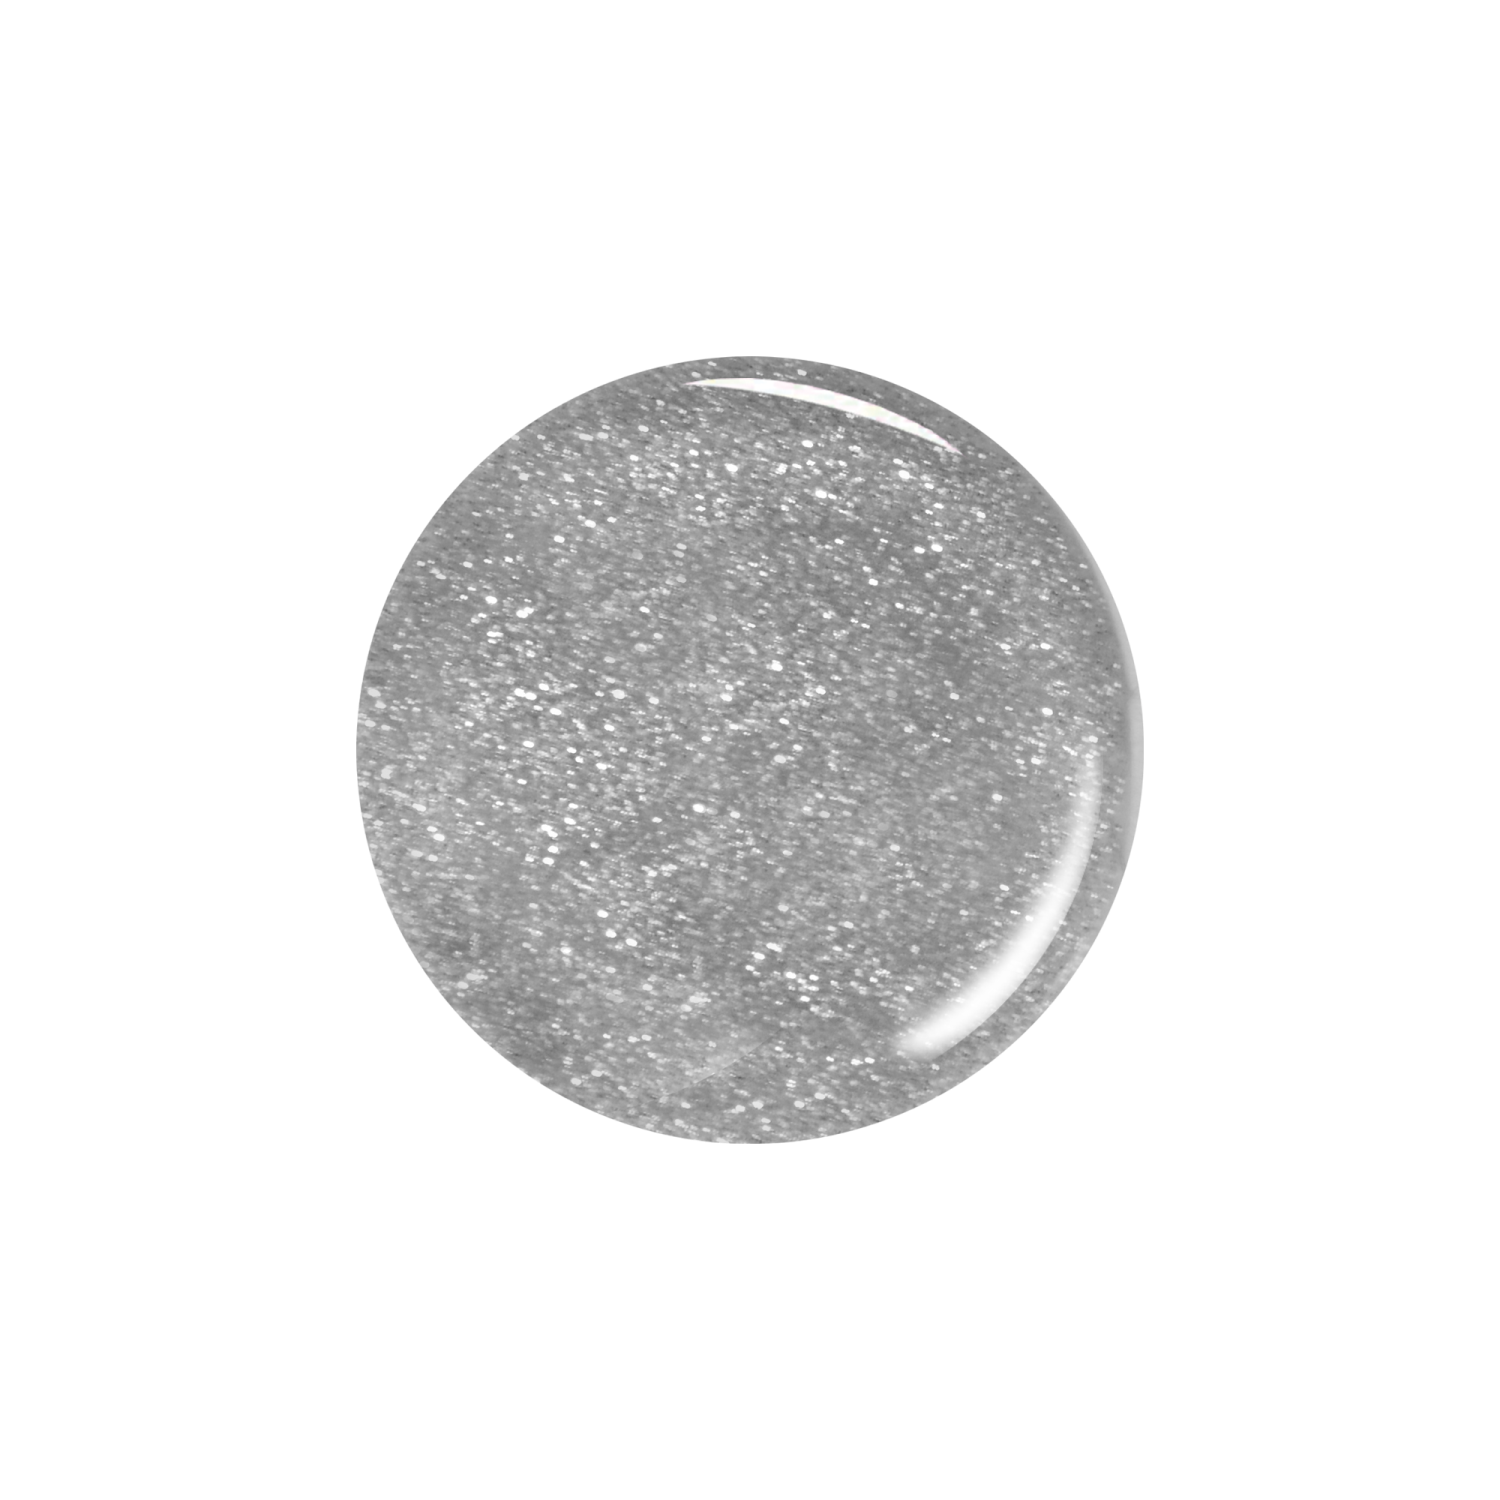 Гель-лак для ногтей Kiki GEL UV LED 61 серебряный фейерверк - фото 2